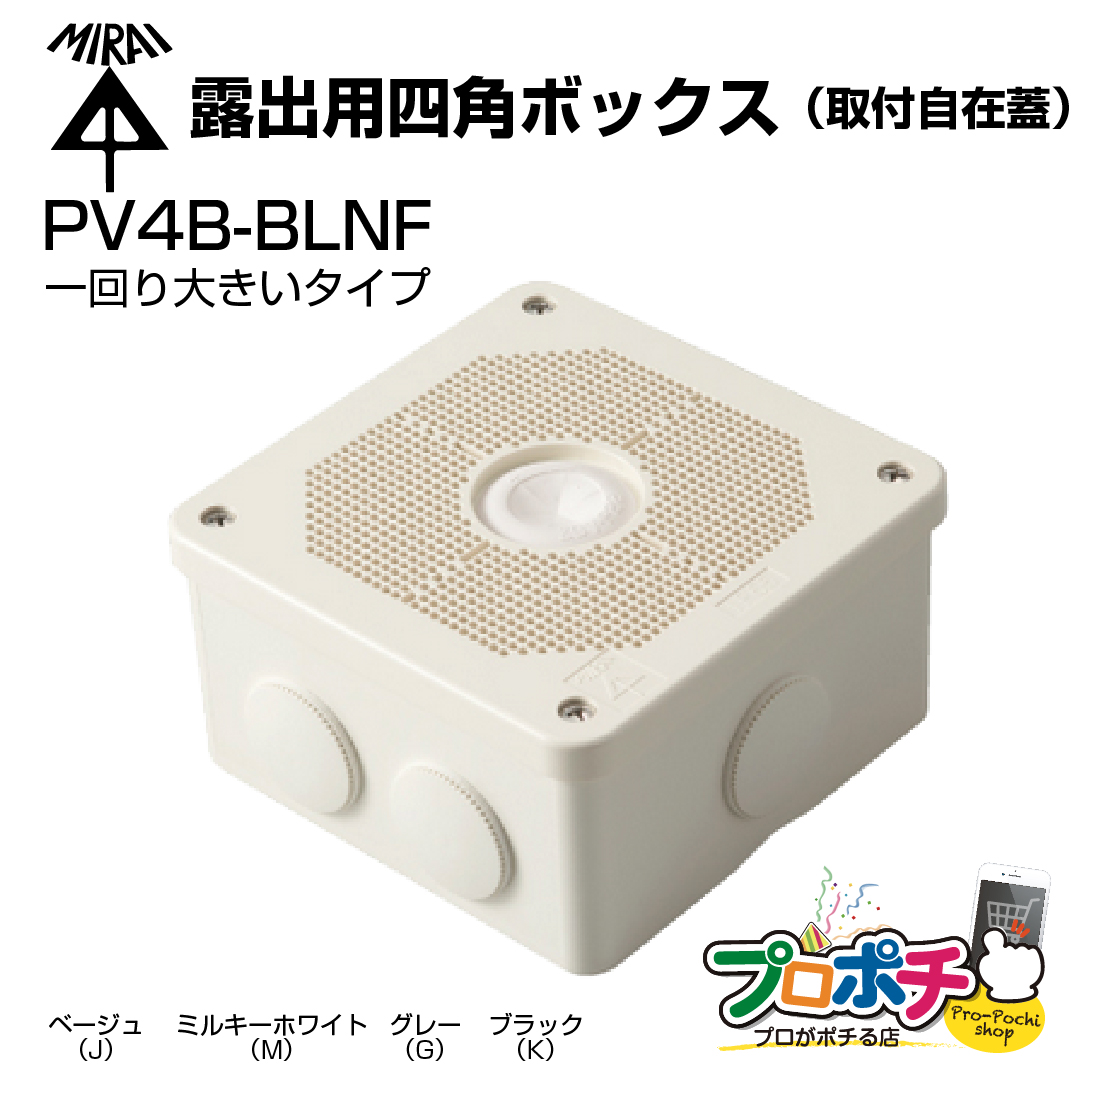 【楽天市場】日東工業 B10-23 [B] 盤用キャビネット・露出形 木製